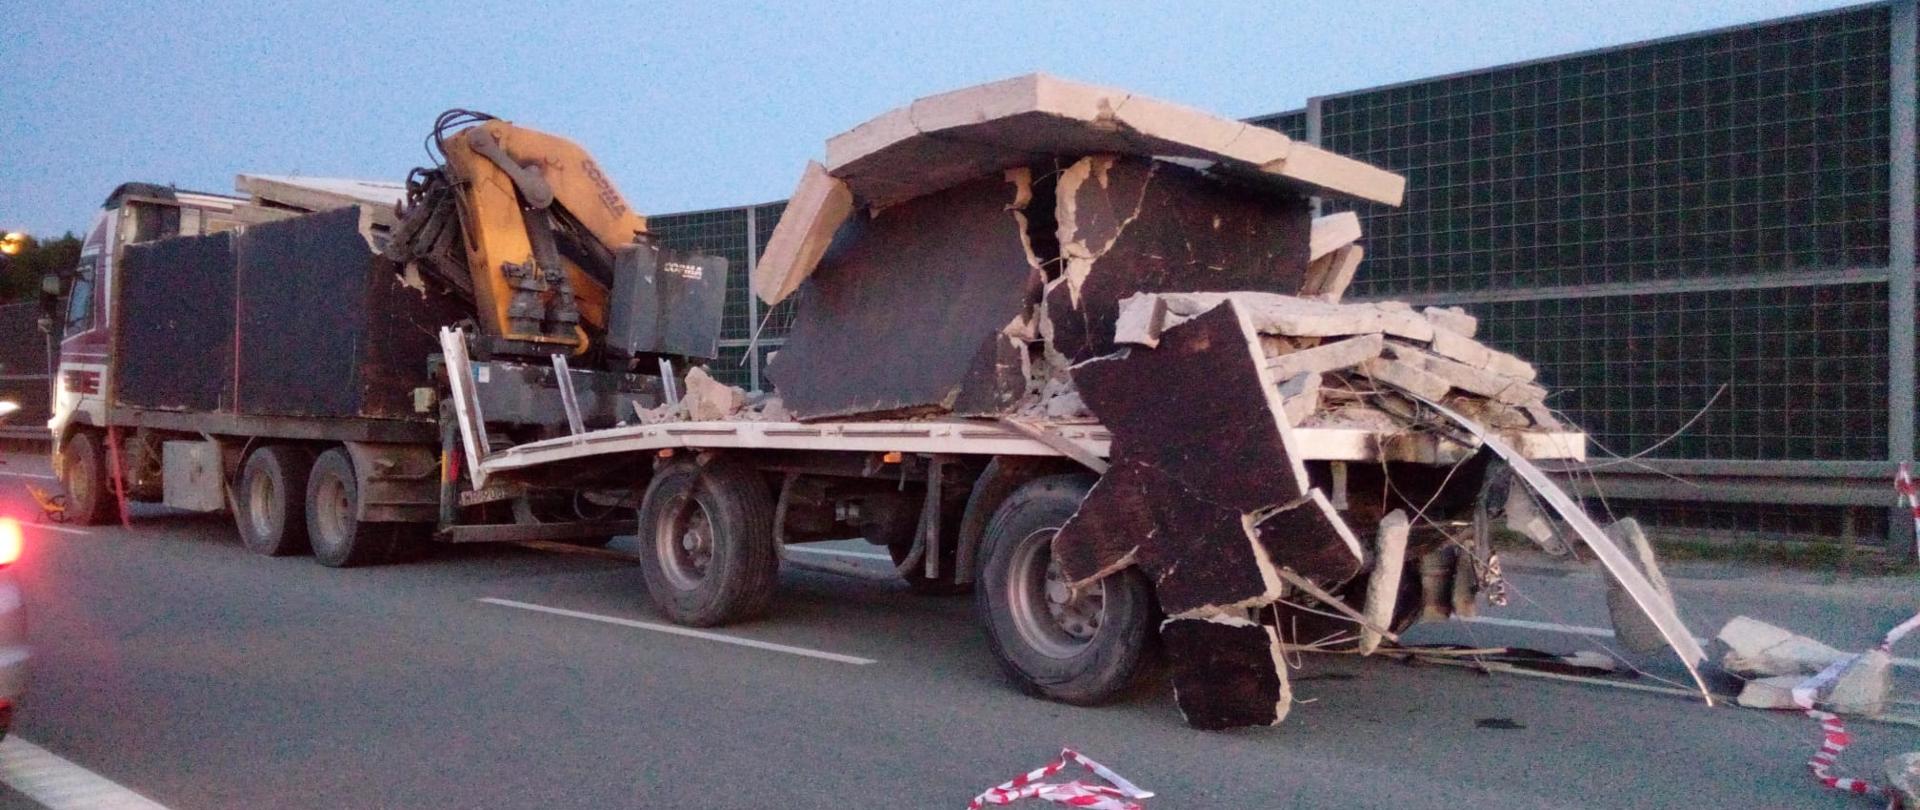 Zdjęcie przedstawia zniszczony ładunek na naczepie jednego z samochodów biorących udział w wypadku.